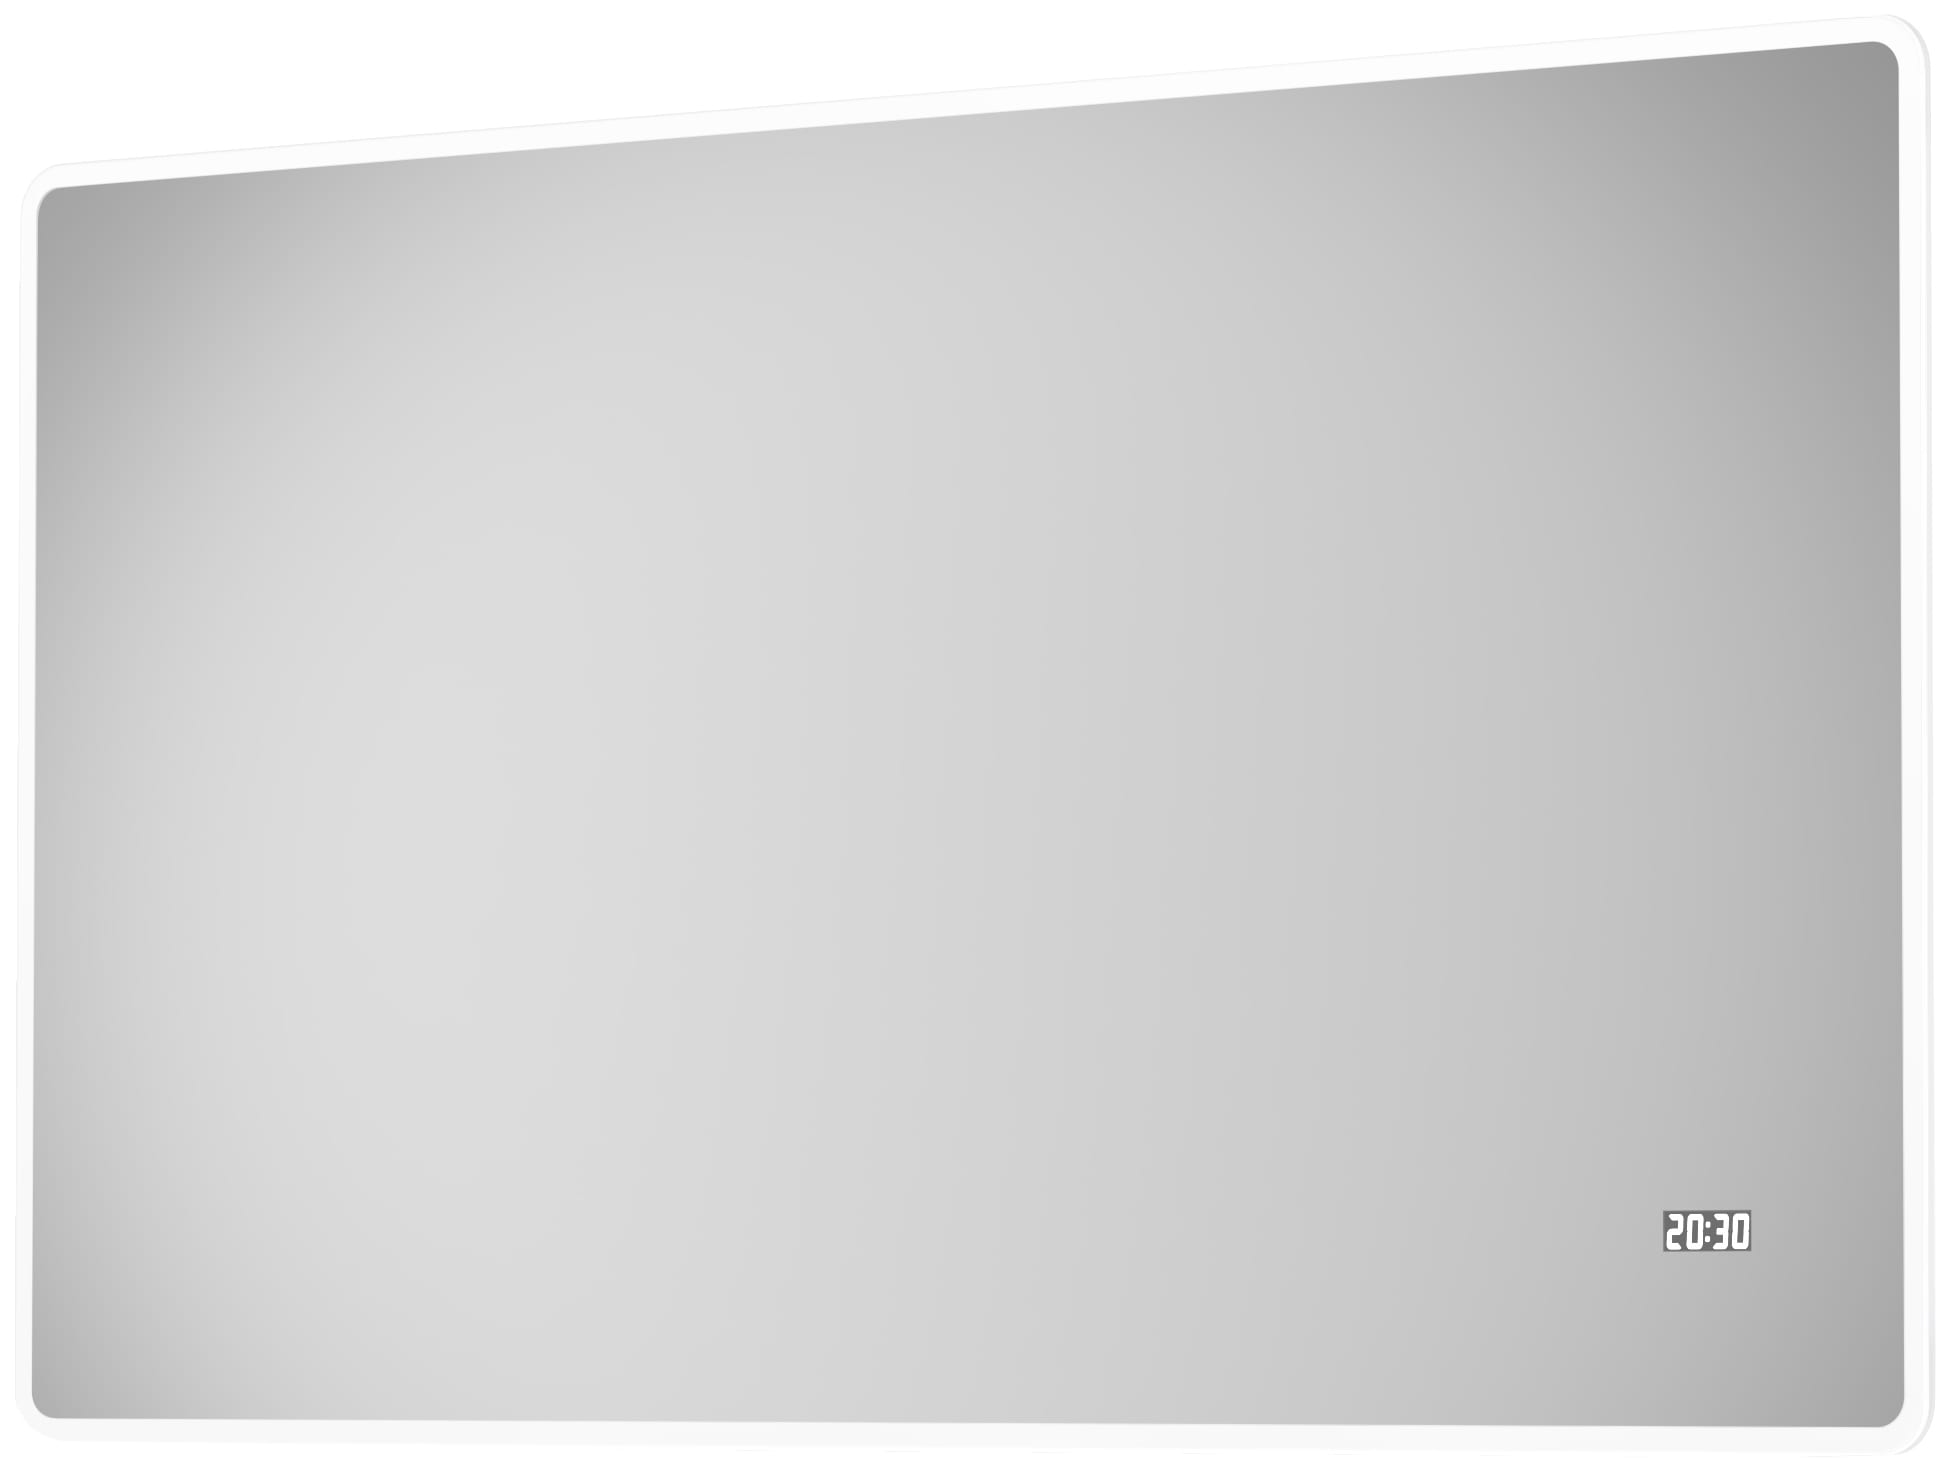 Talos Badspiegel »Sun«, BxH: 120x70 cm, energiesparend, mit Digitaluhr